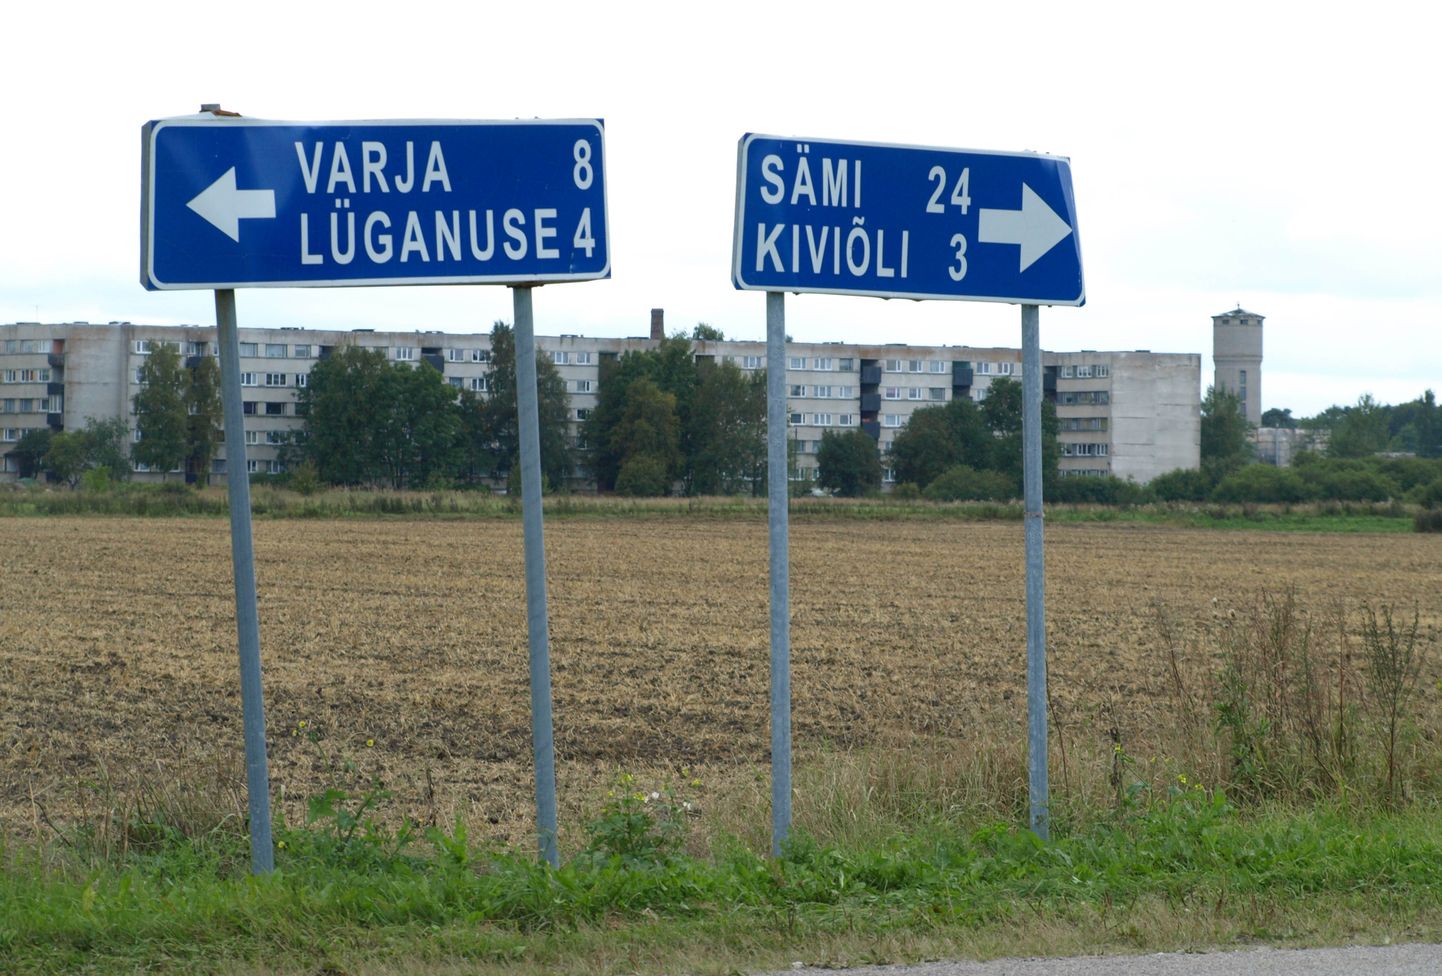 В ходе административной реформы объединились также Люганузеская волость и город Кивиыли.